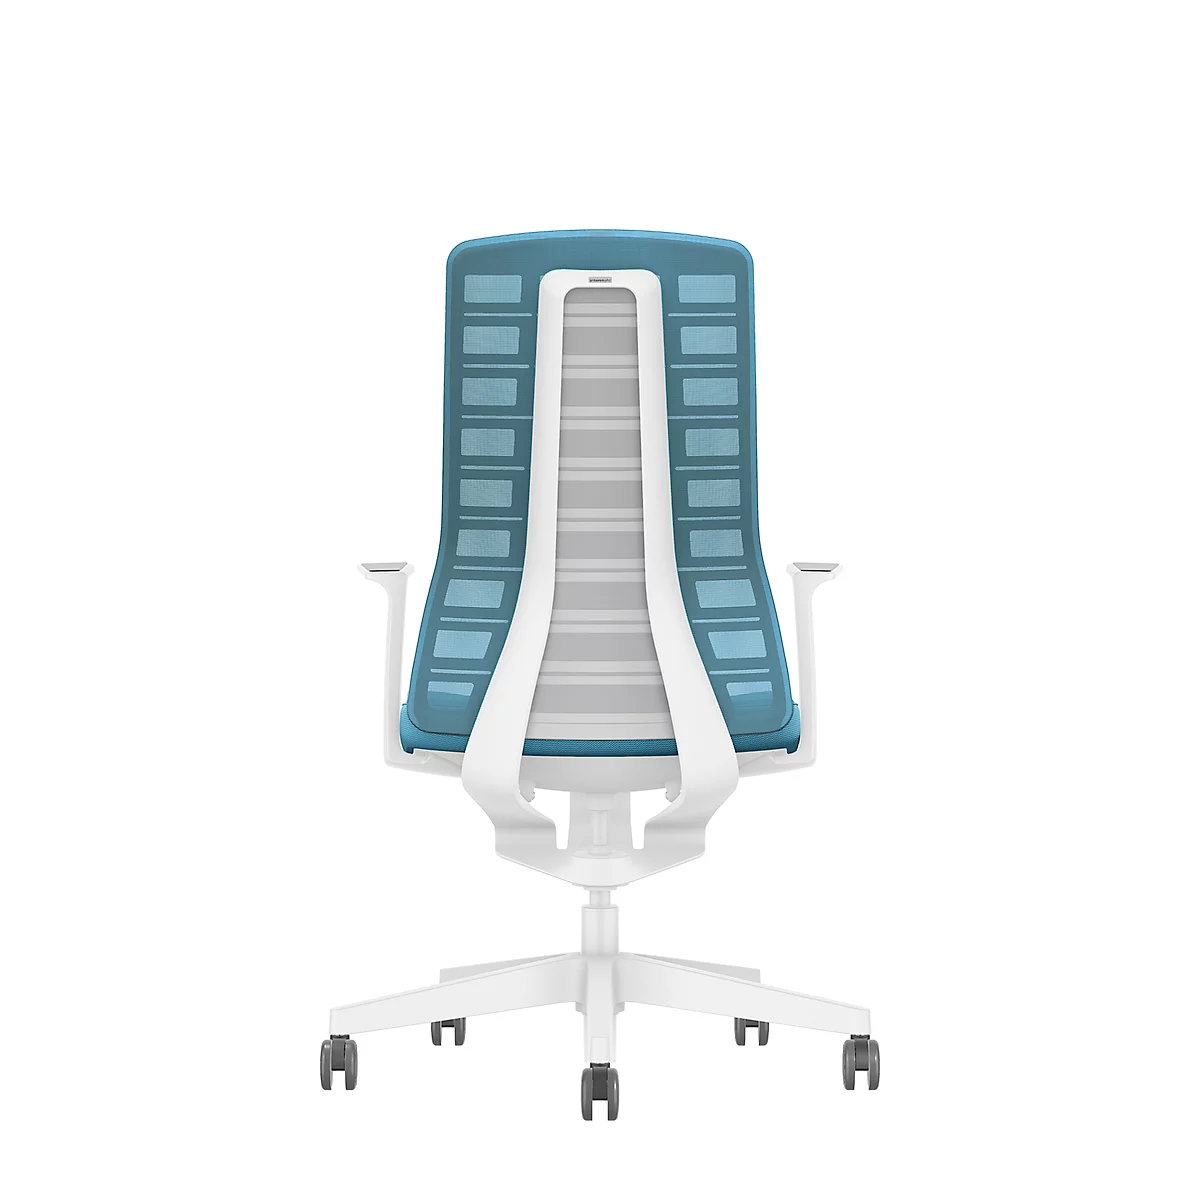 Interstuhl Bürostuhl PUREis3, verstellbare Armlehnen, 3D-Auto-Synchronmechanik, Muldensitz, Netzrücken, pastellblau/weiß